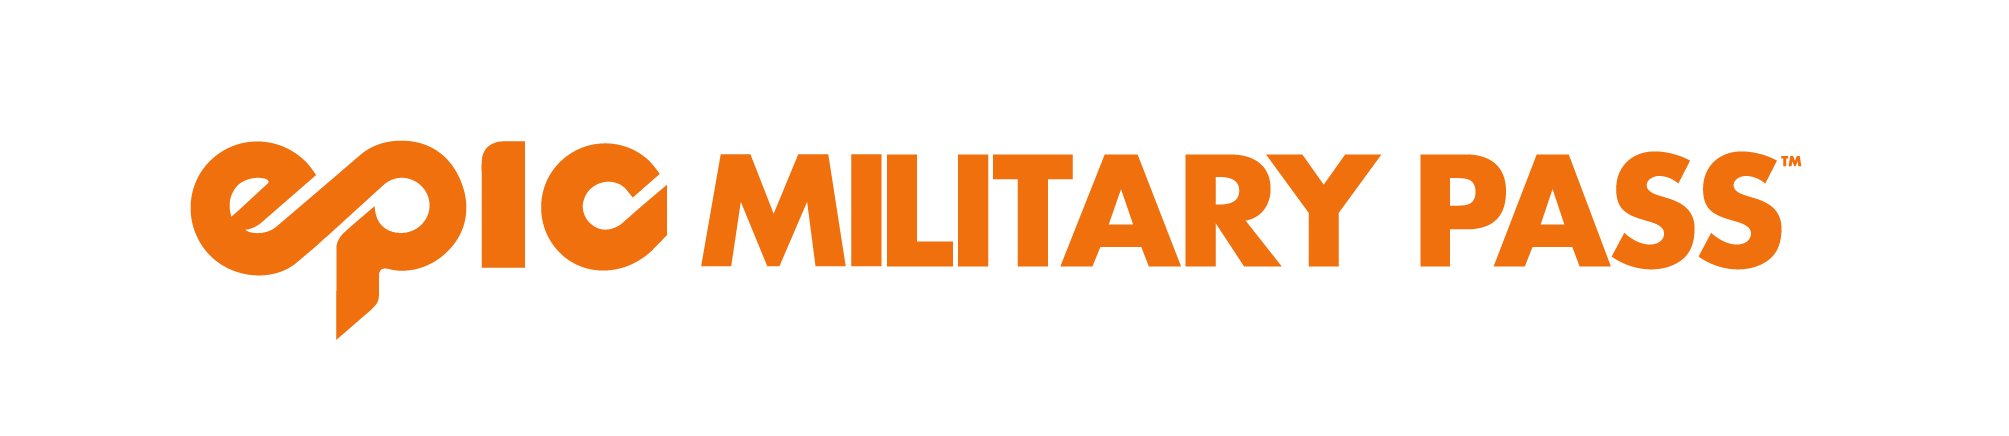 EpicMilitaryPass Logo